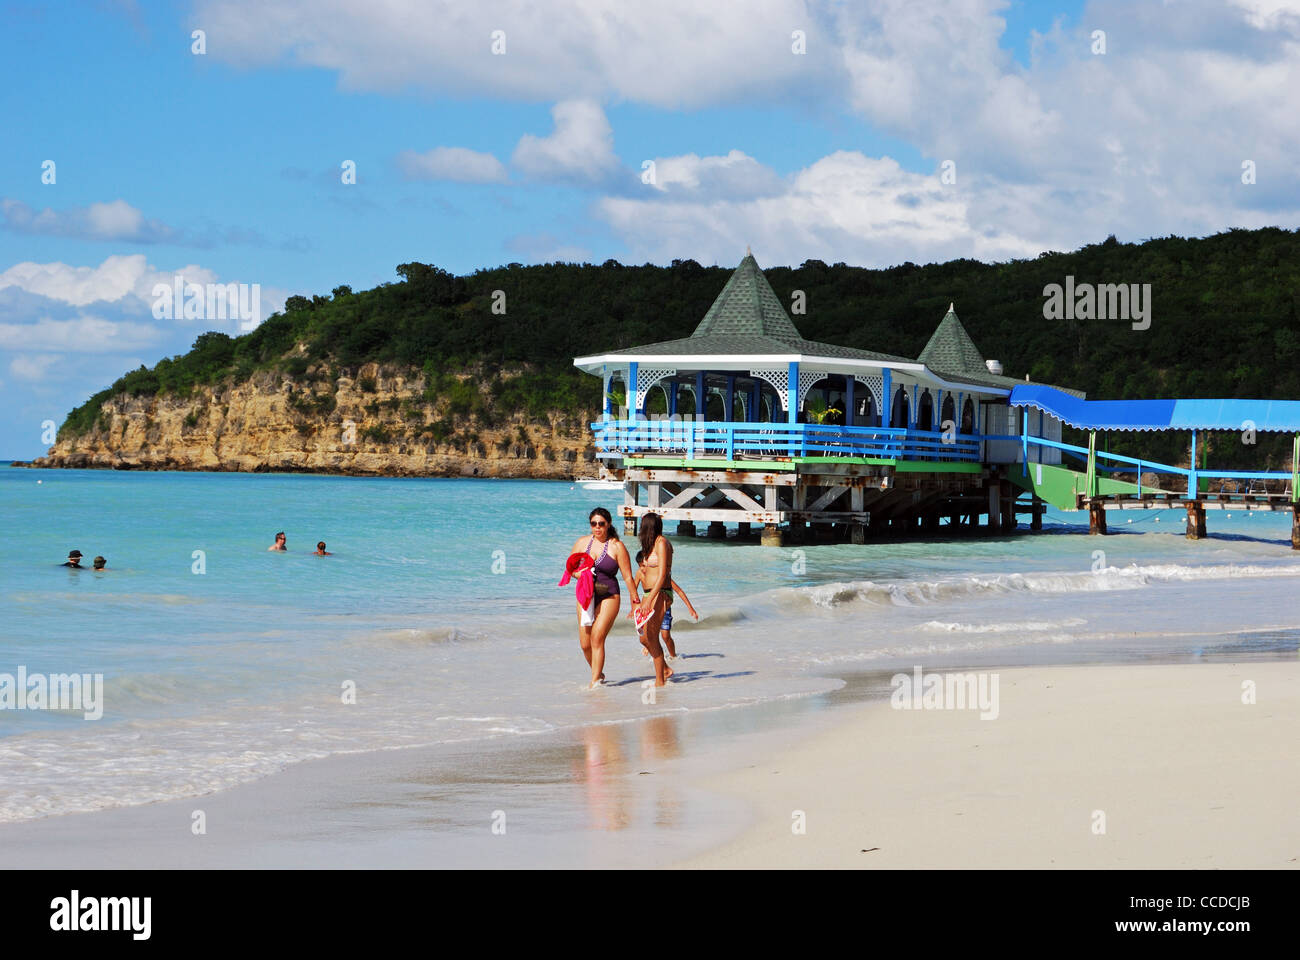 Los turistas caminando por la playa, St. Johns, Antigua, Islas de Sotavento, Caribe, West Indies. Foto de stock